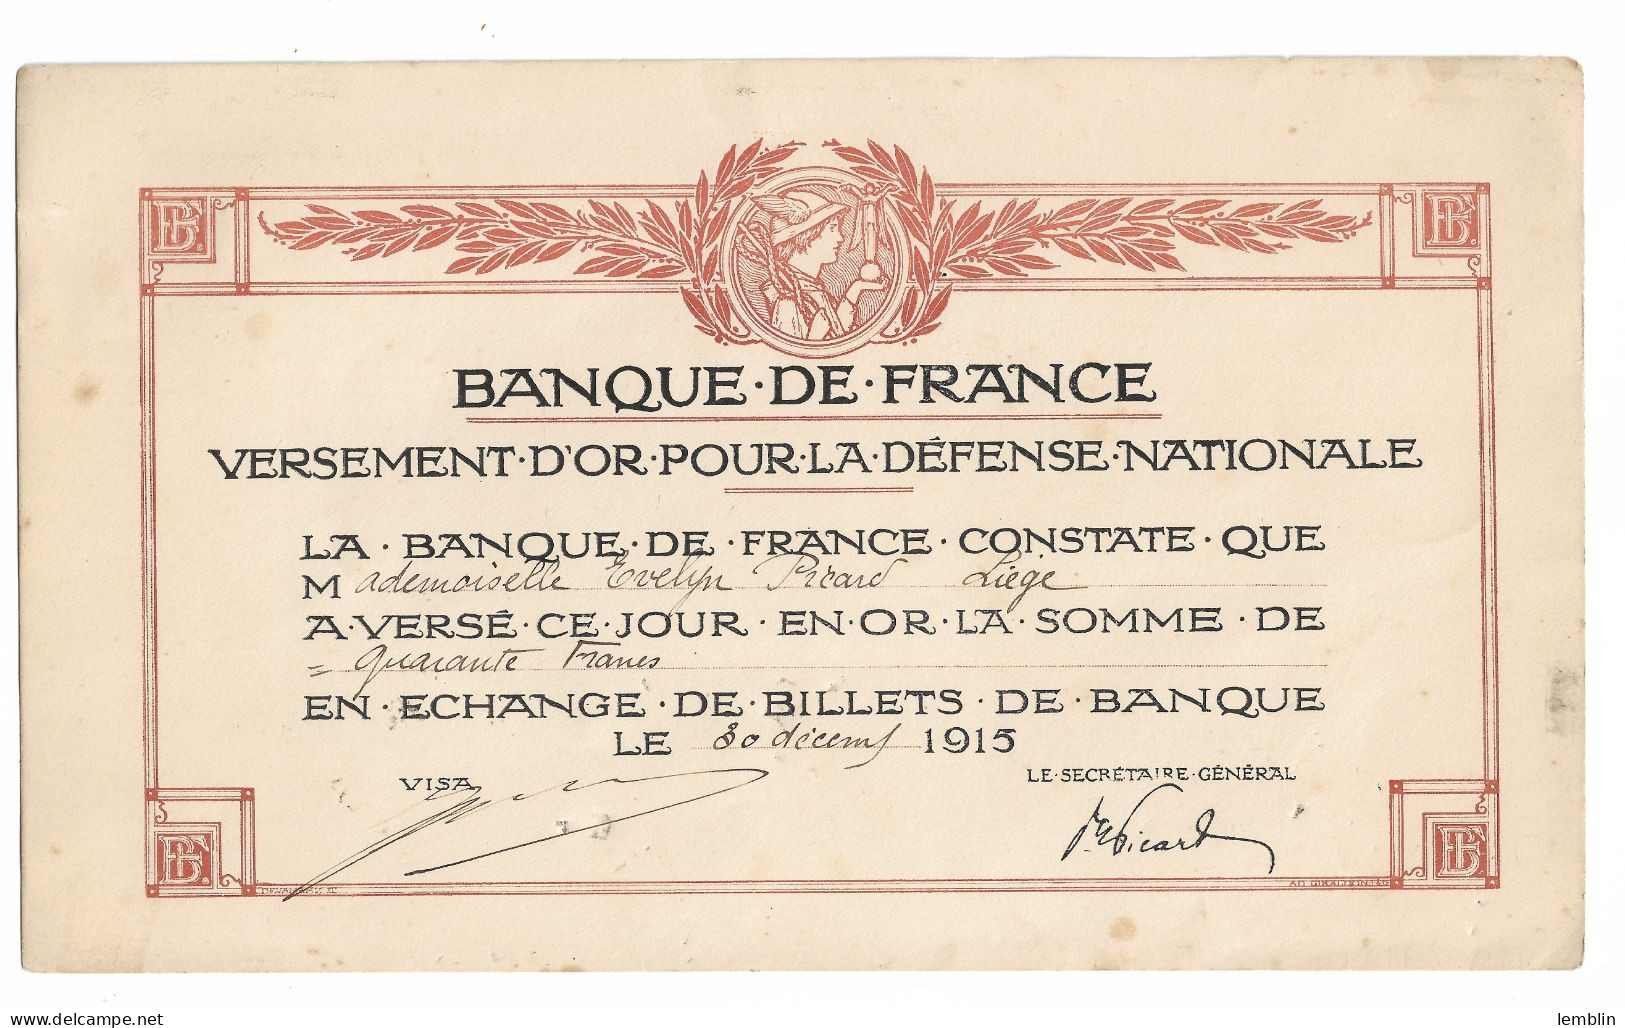 FRANCE - VERSEMENT OR POUR LA DEFENSE NATIONALE DE LA BANQUE DE FRANCE 1915 - Banque & Assurance